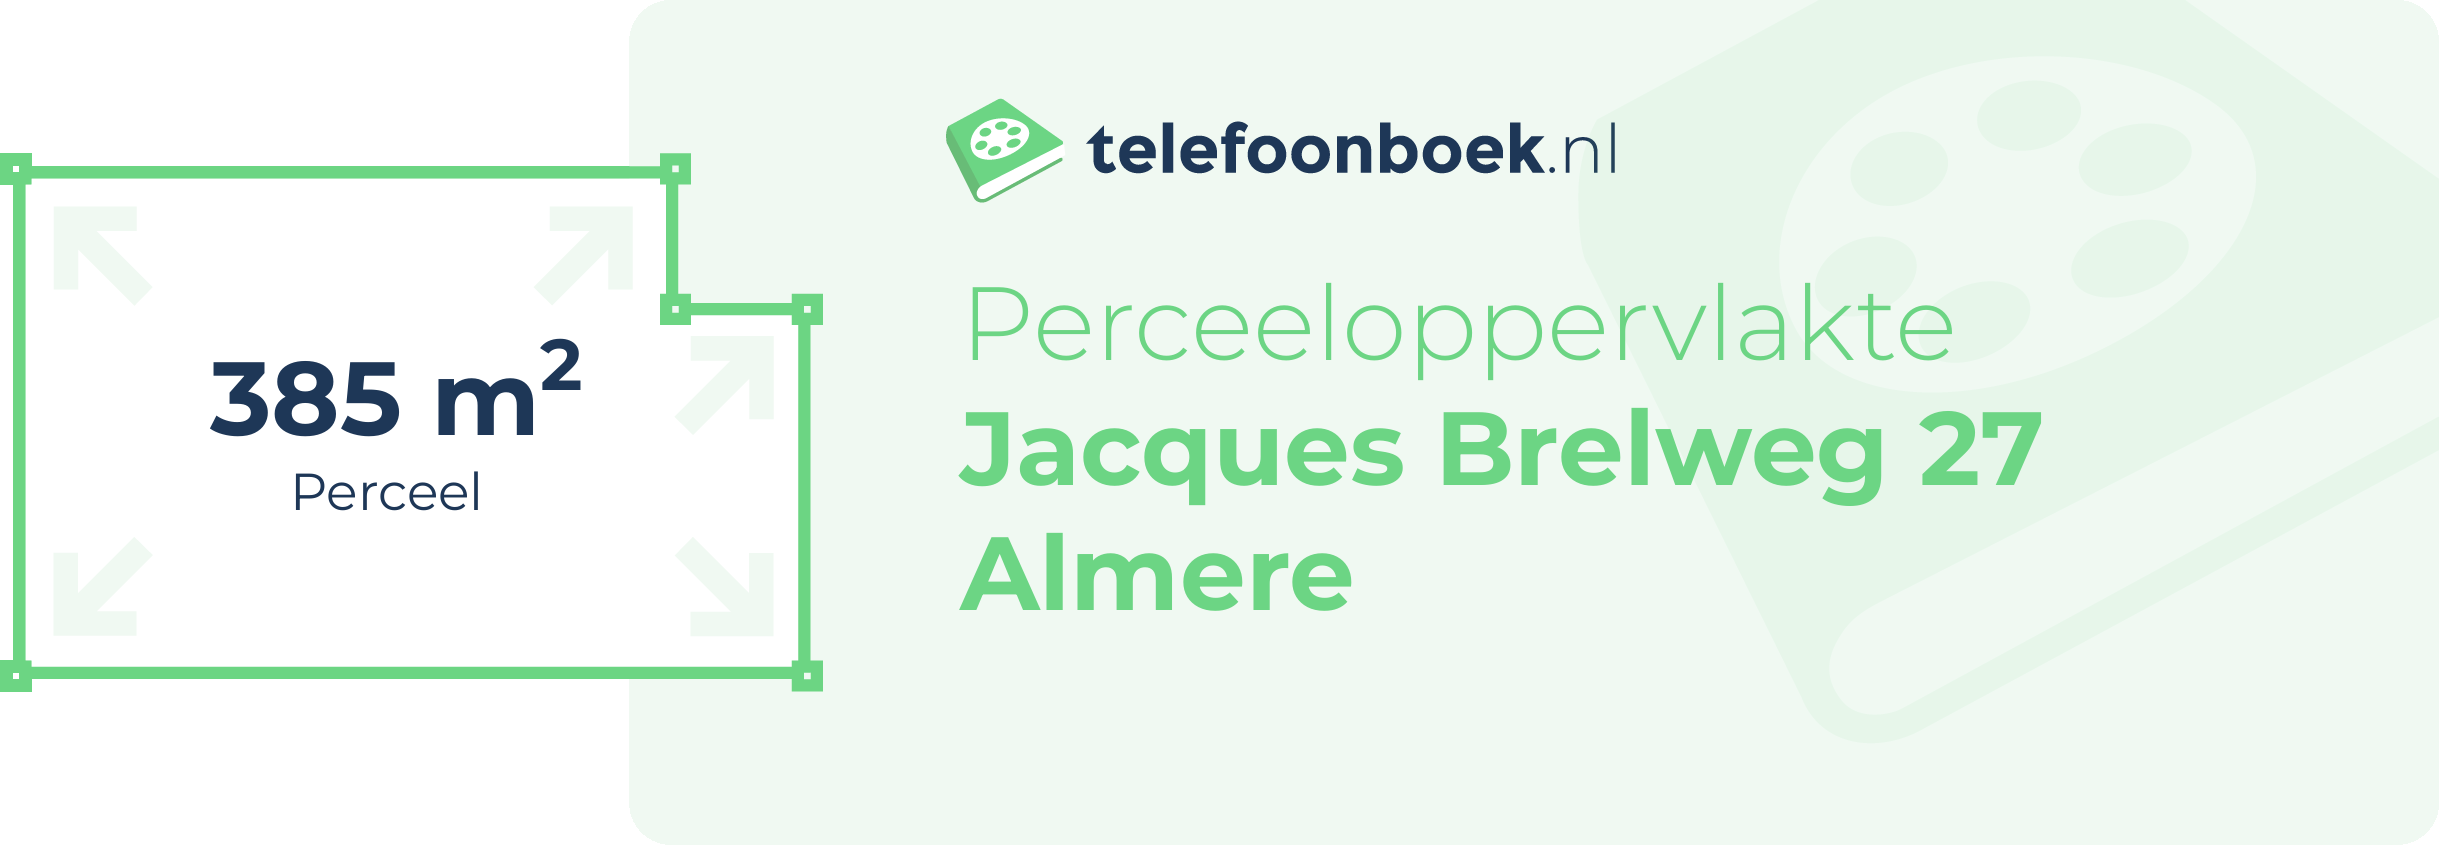 Perceeloppervlakte Jacques Brelweg 27 Almere